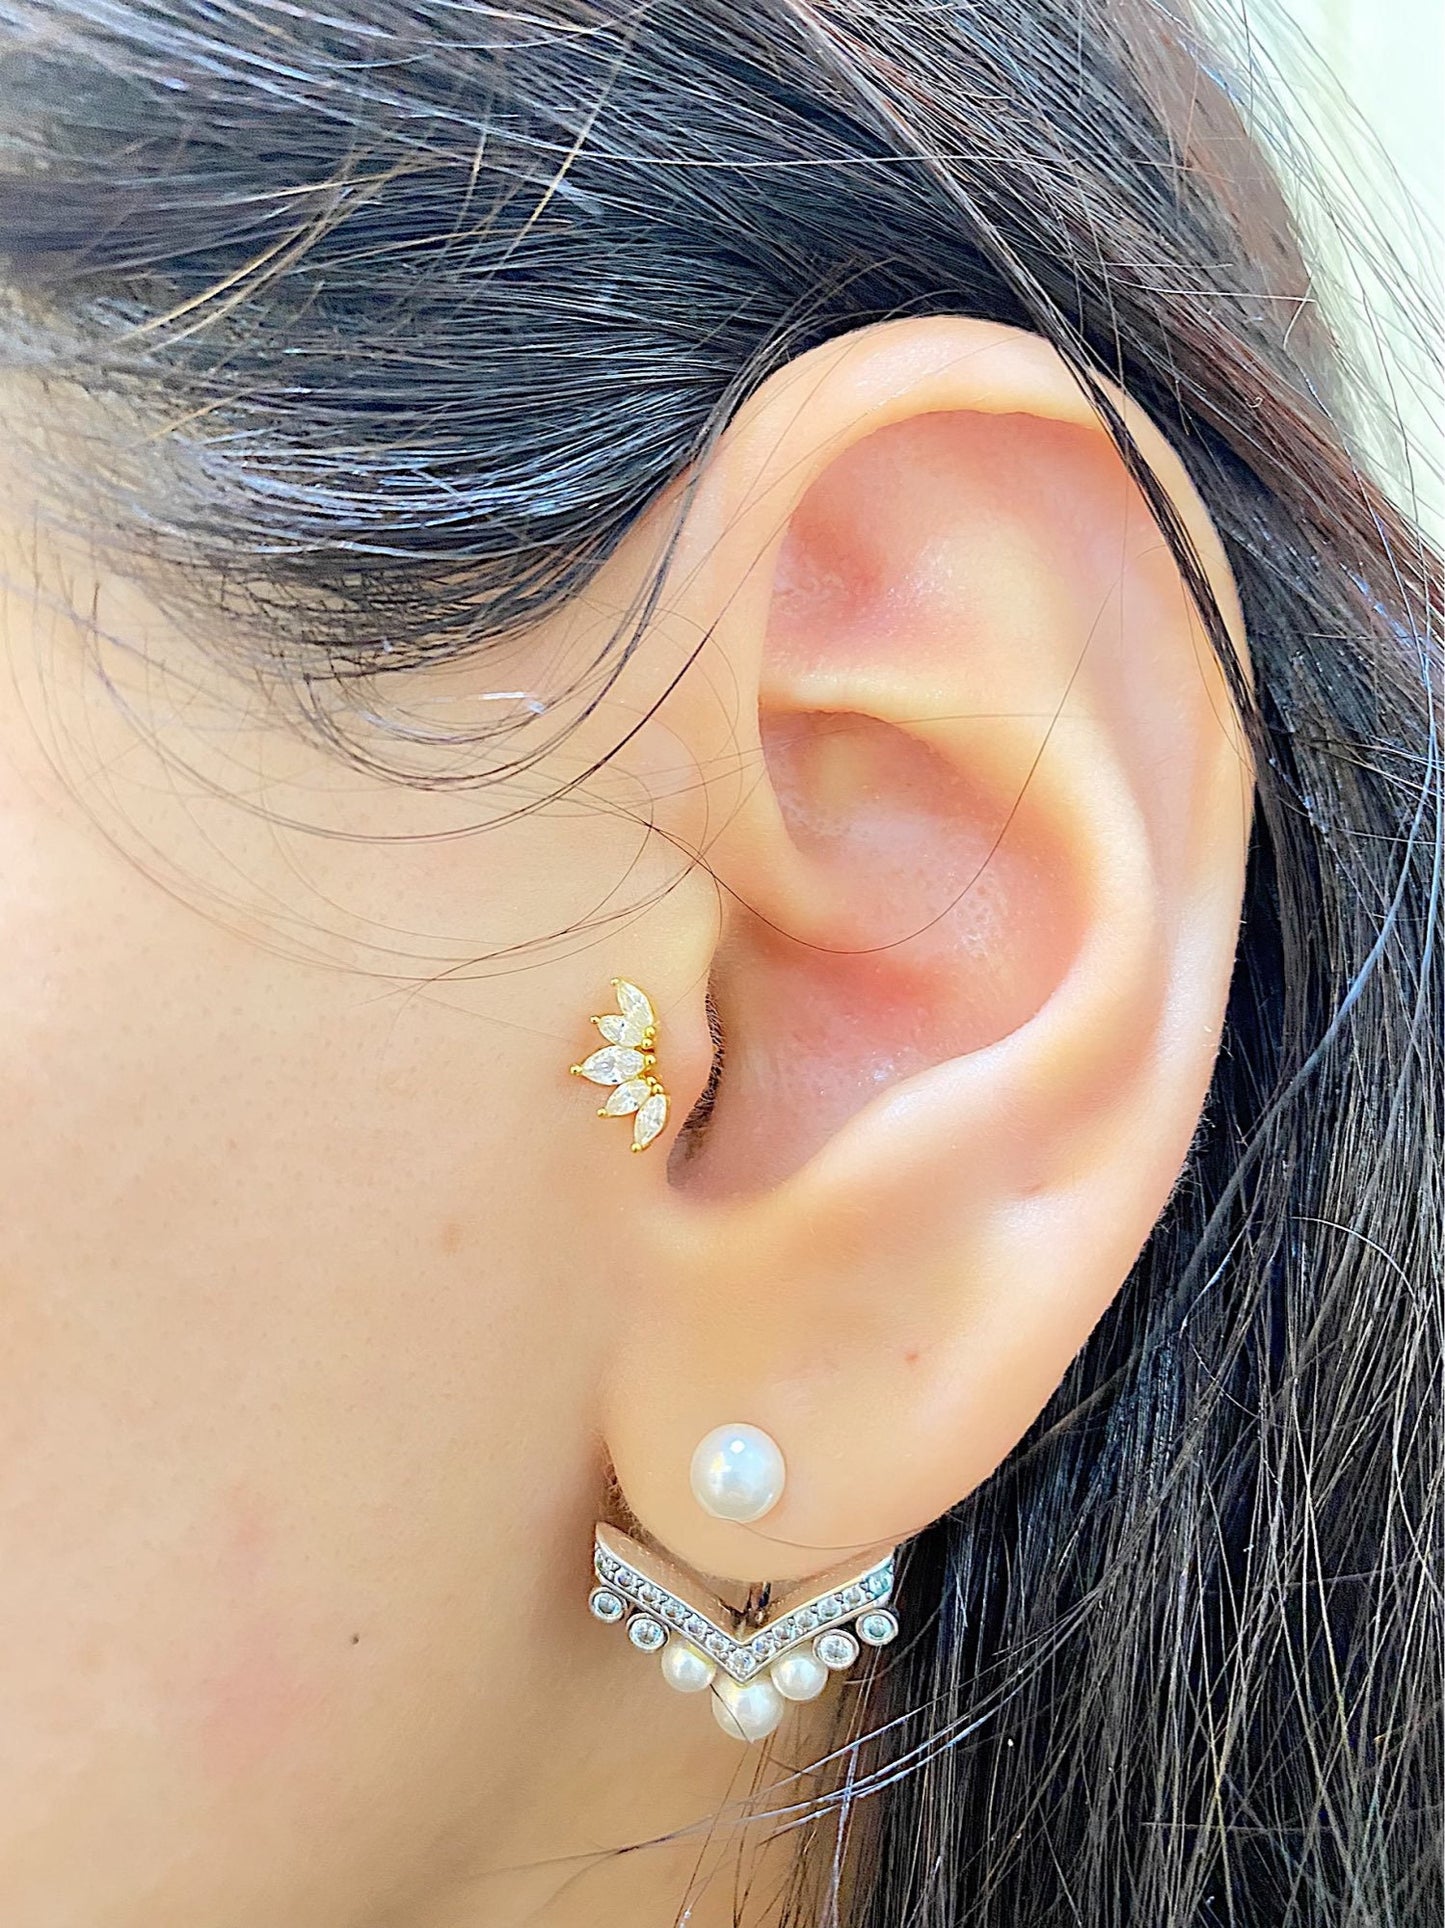 Dainty 925 Sterling Silver Wings Stud Earrings-Minimalist Gold Stud Earrings-Small Crystal Earrings-Shiny Wings Stud Earrings-Angel Earrings